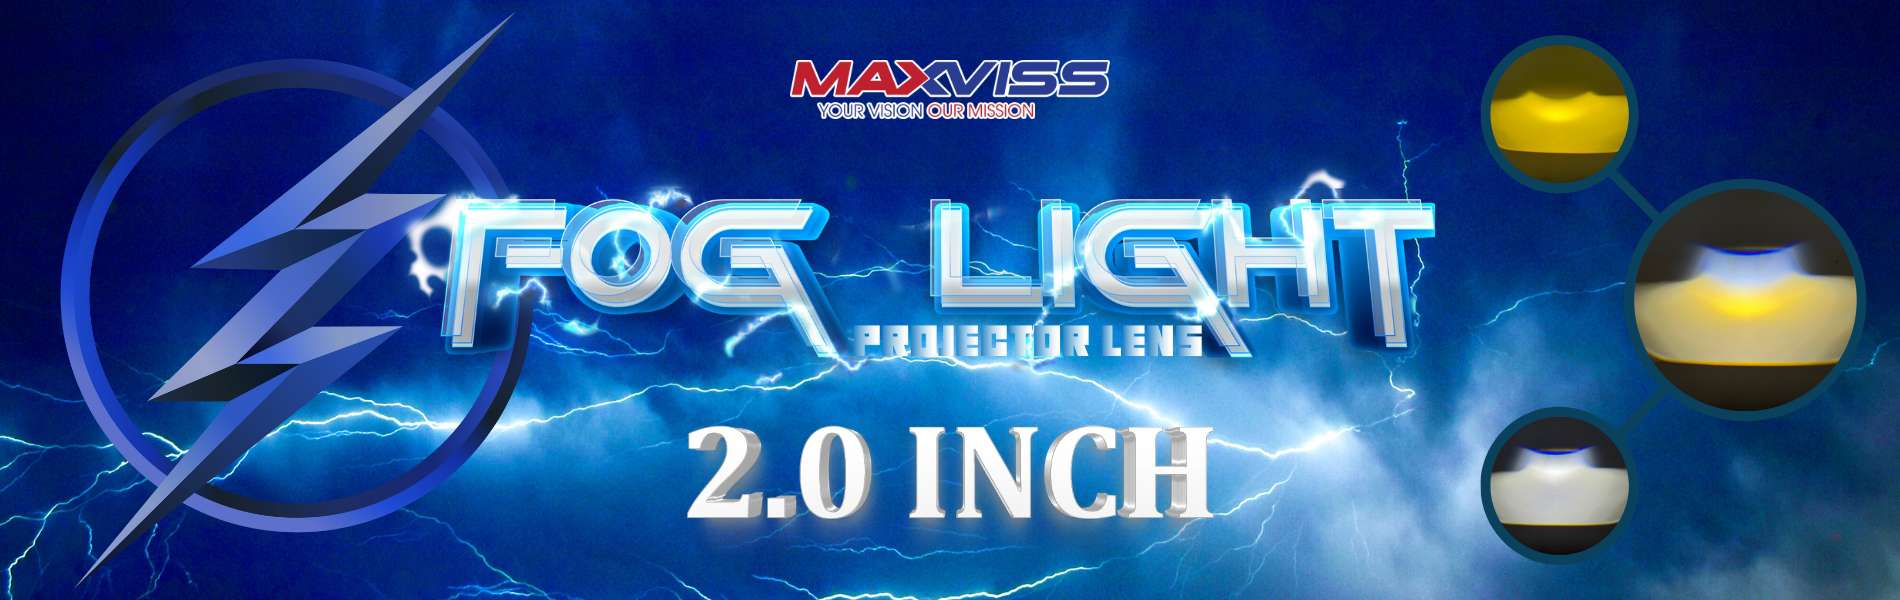 BI GẦM LED MAXVISS 2.0 INCH 3 CHẾ ĐỘ